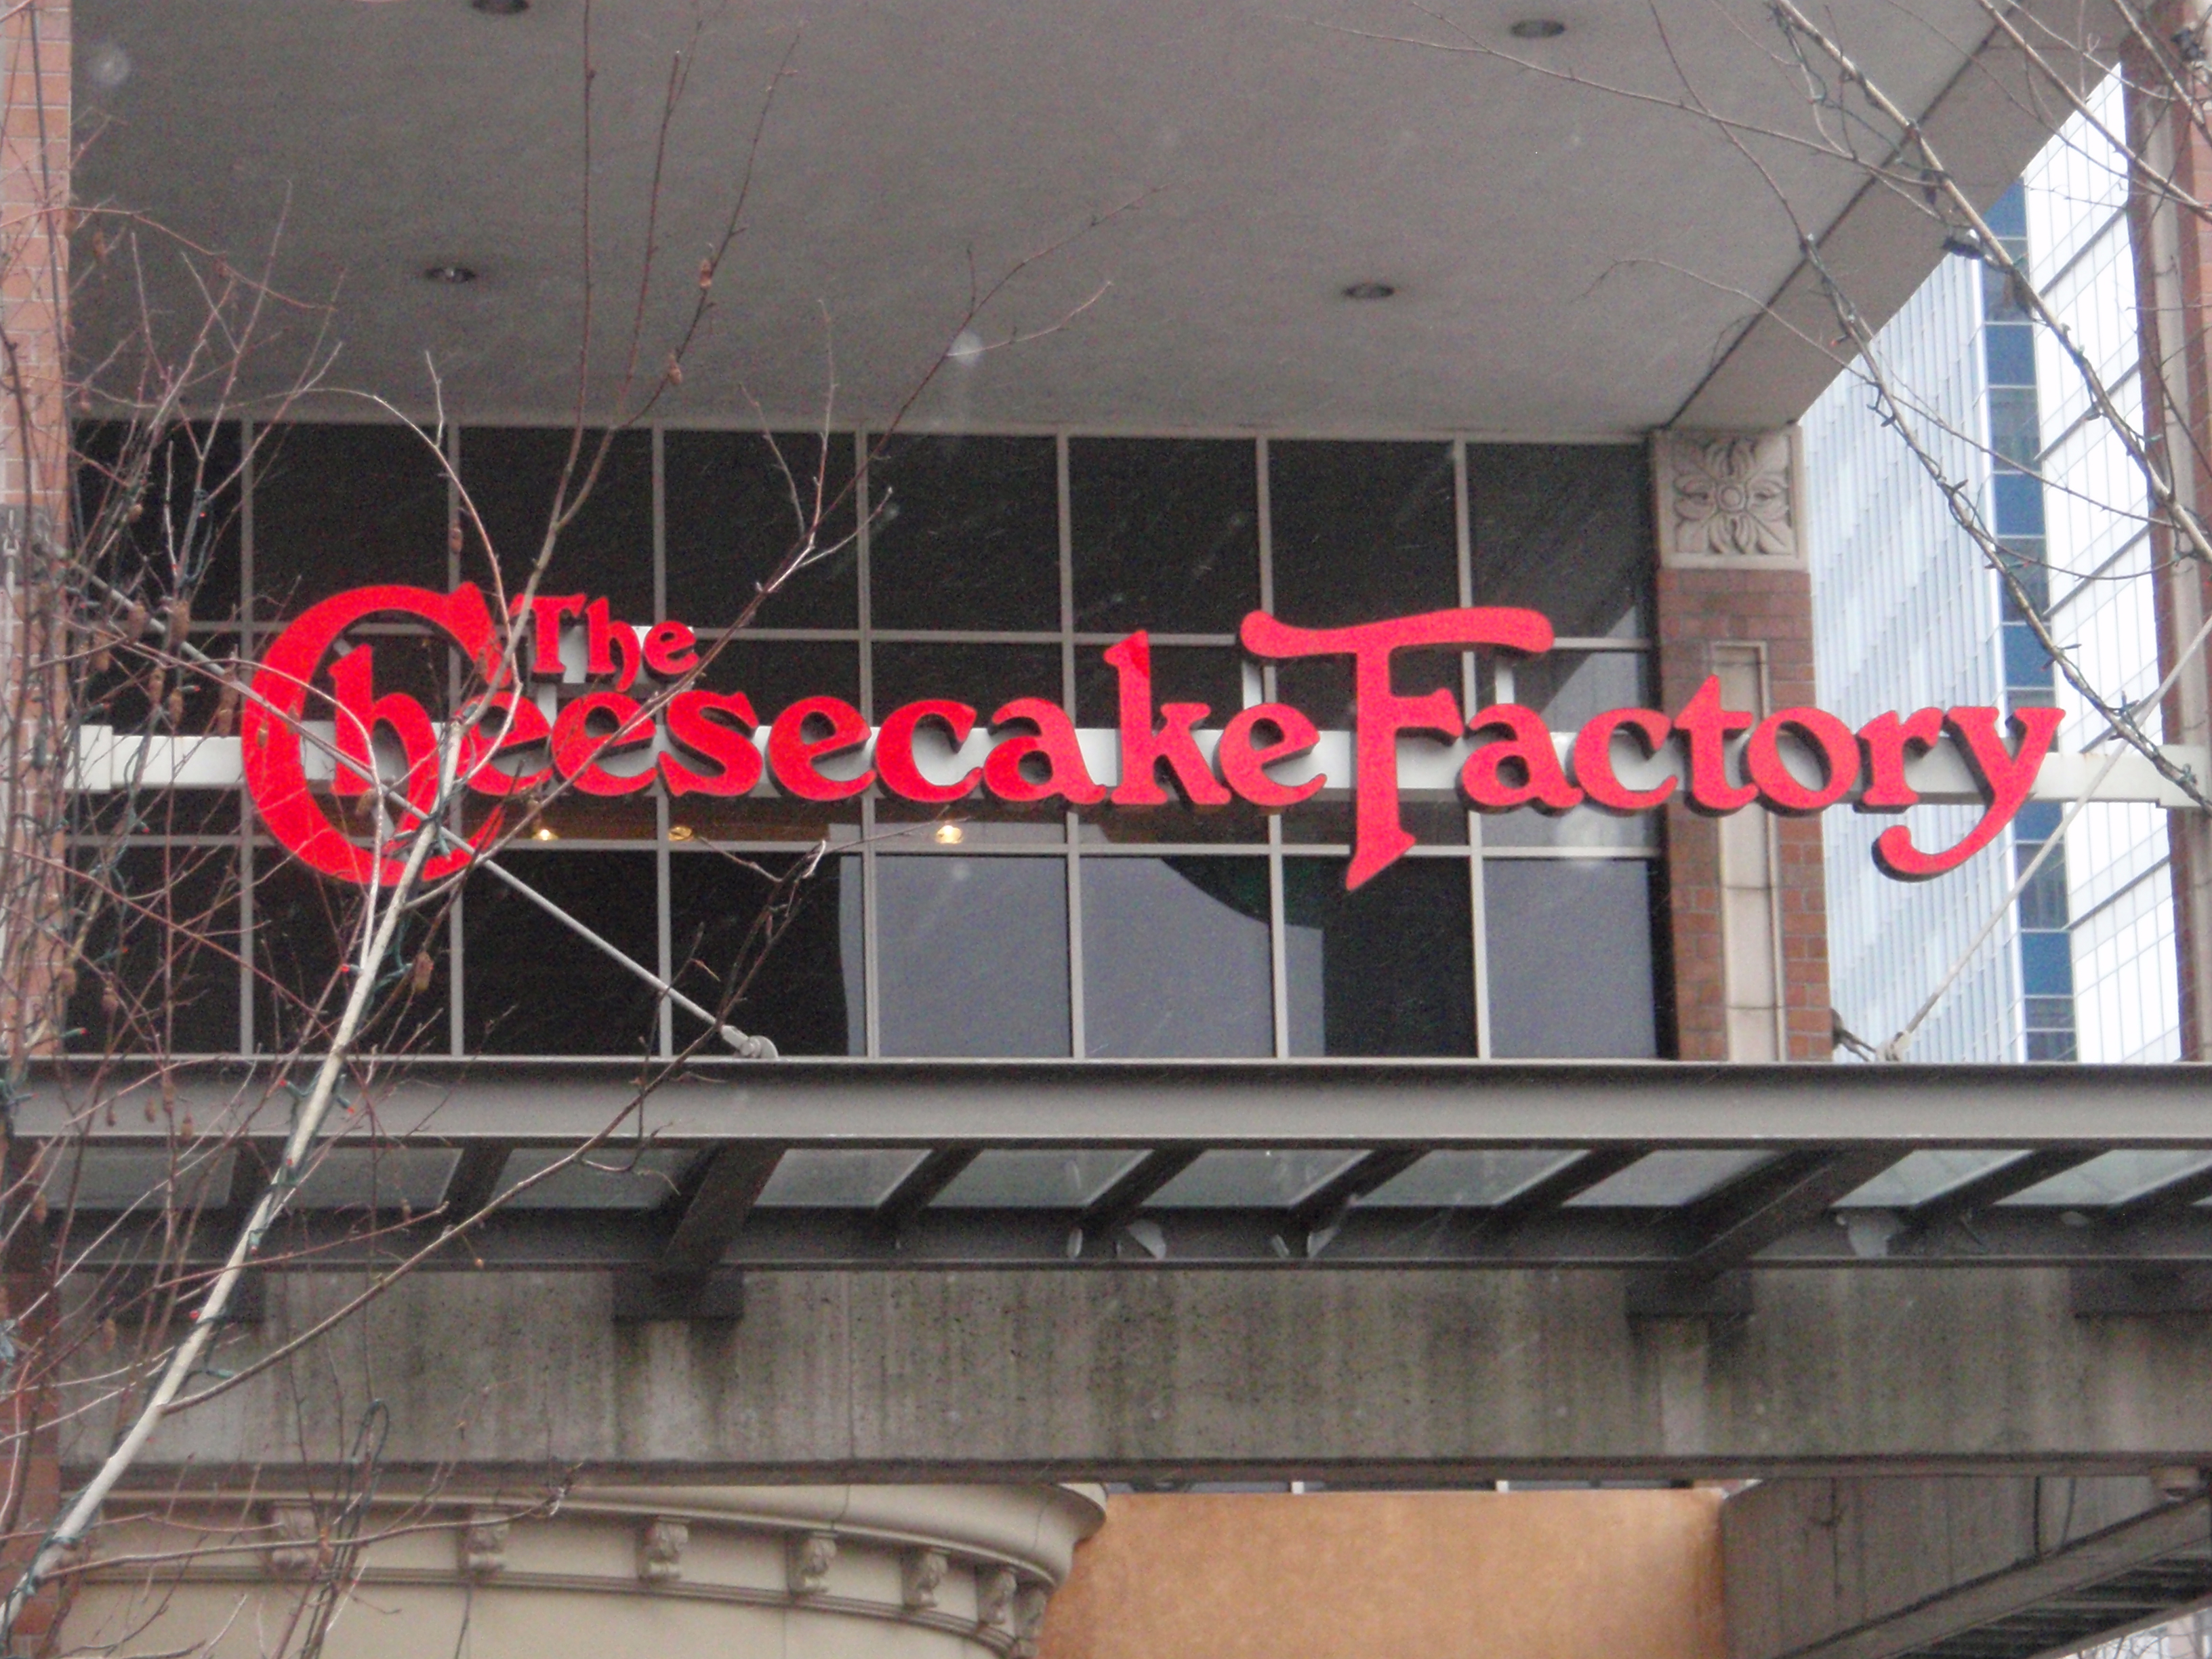 Uma fotografia mostra uma grande placa da Cheesecake Factory pendurada acima da entrada de um prédio.